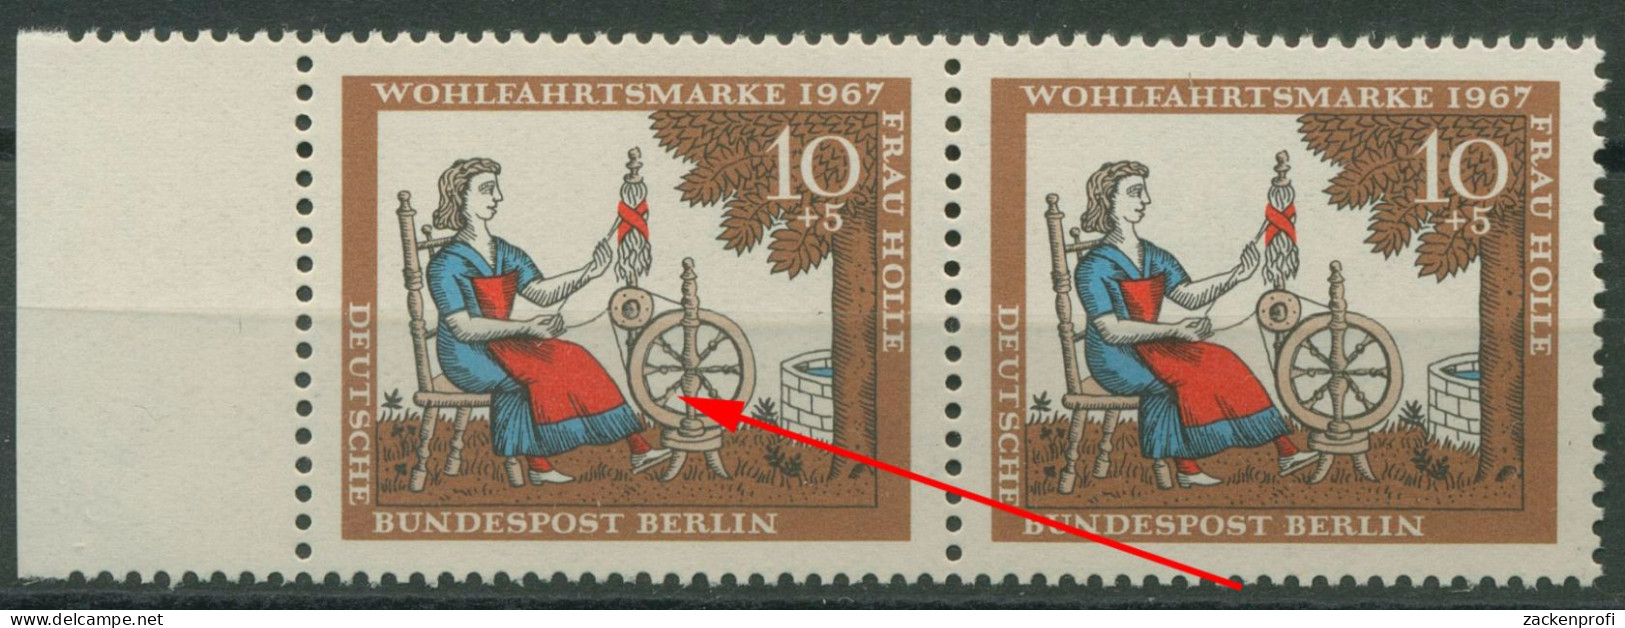 Berlin 1967 Wohlfahrt Frau Holle Mit Plattenfehler 310 F 21 Postfrisch - Errors & Oddities